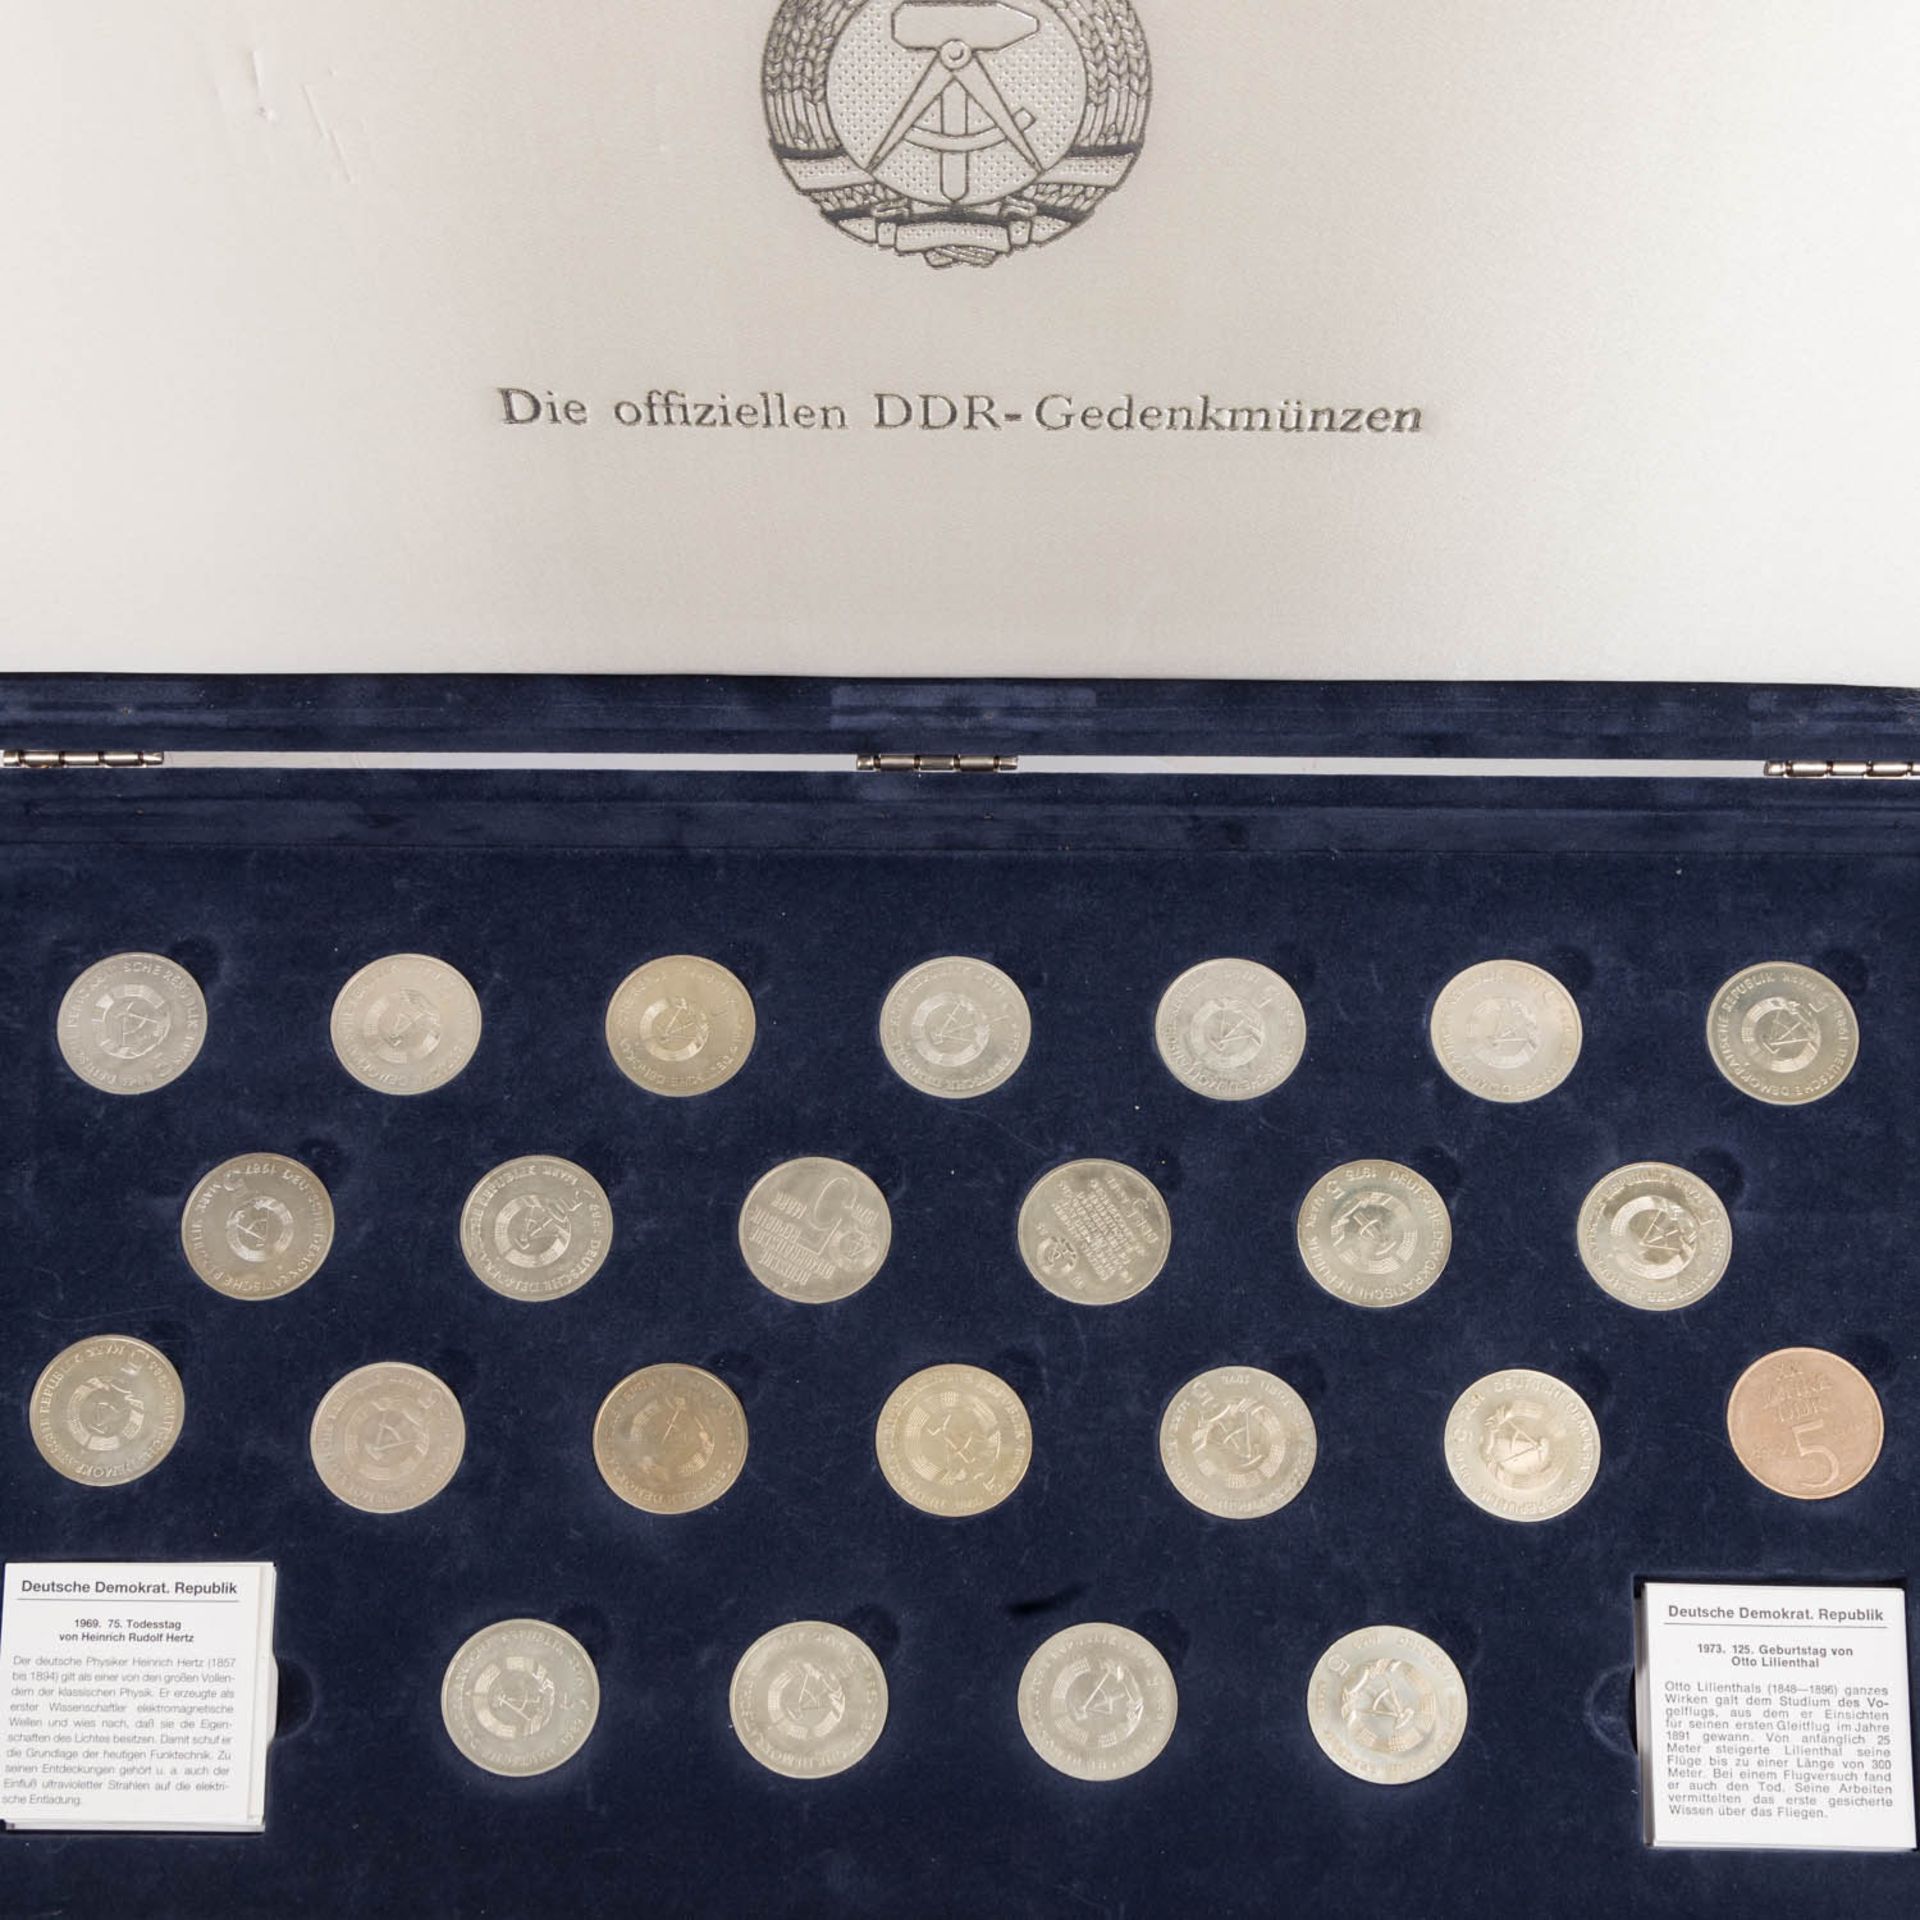 Die offiziellen DDR-Gedenkmünzen, Sammlung in Münzkassette - Bild 4 aus 4